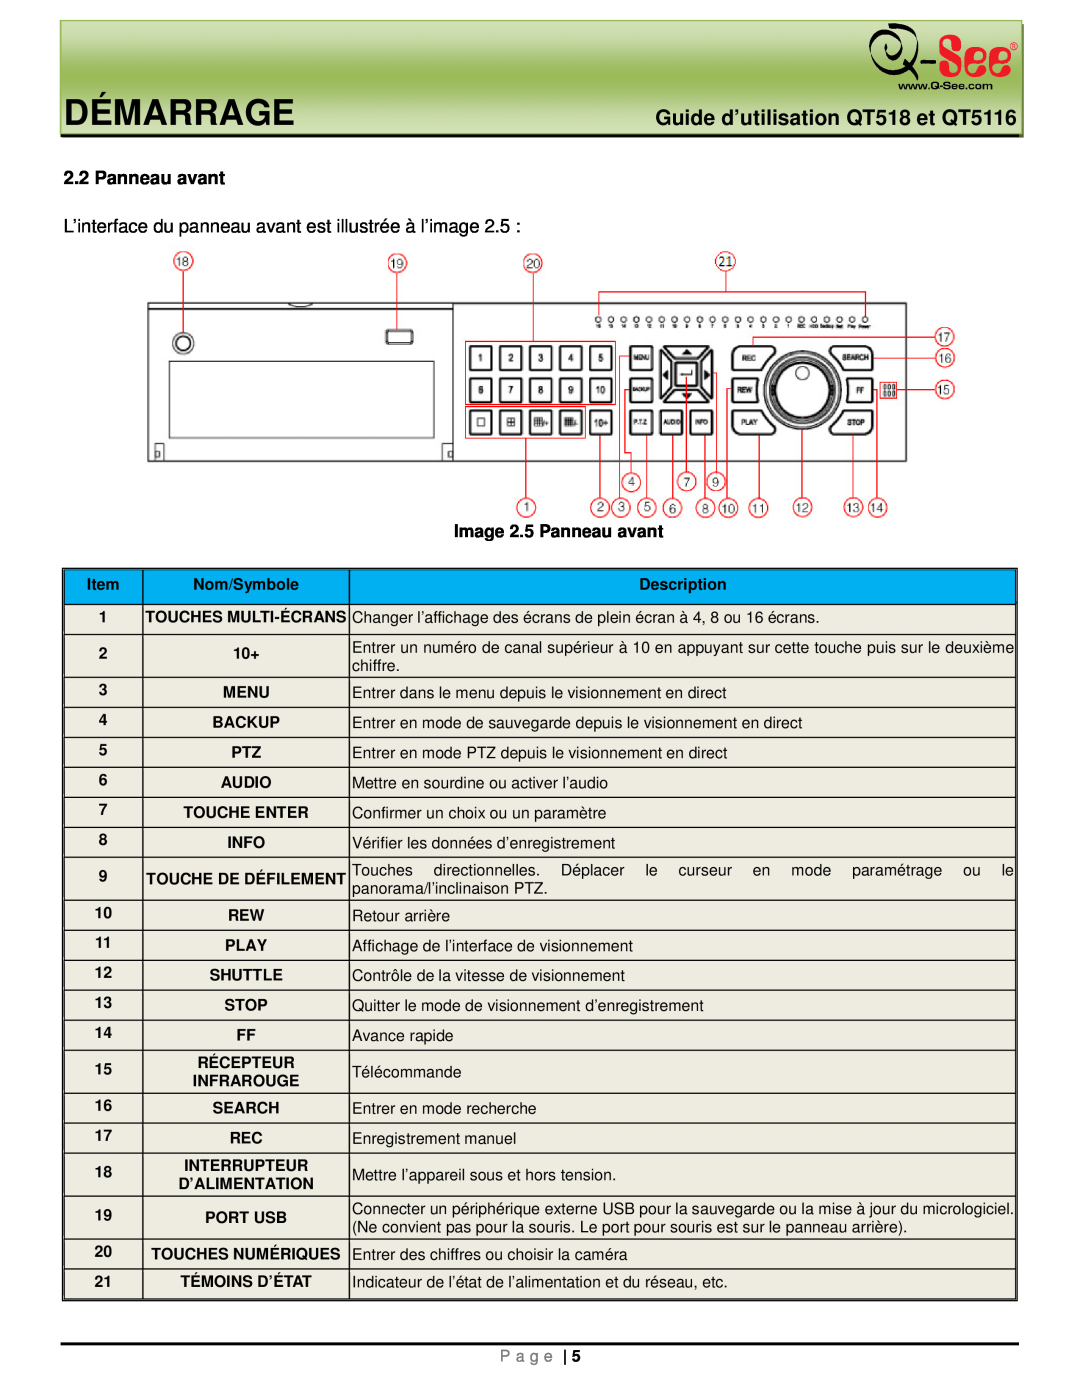 Q-See manual Démarrage, Guide d’utilisation QT518 et QT5116, Image 2.5 Panneau avant, P a g e 